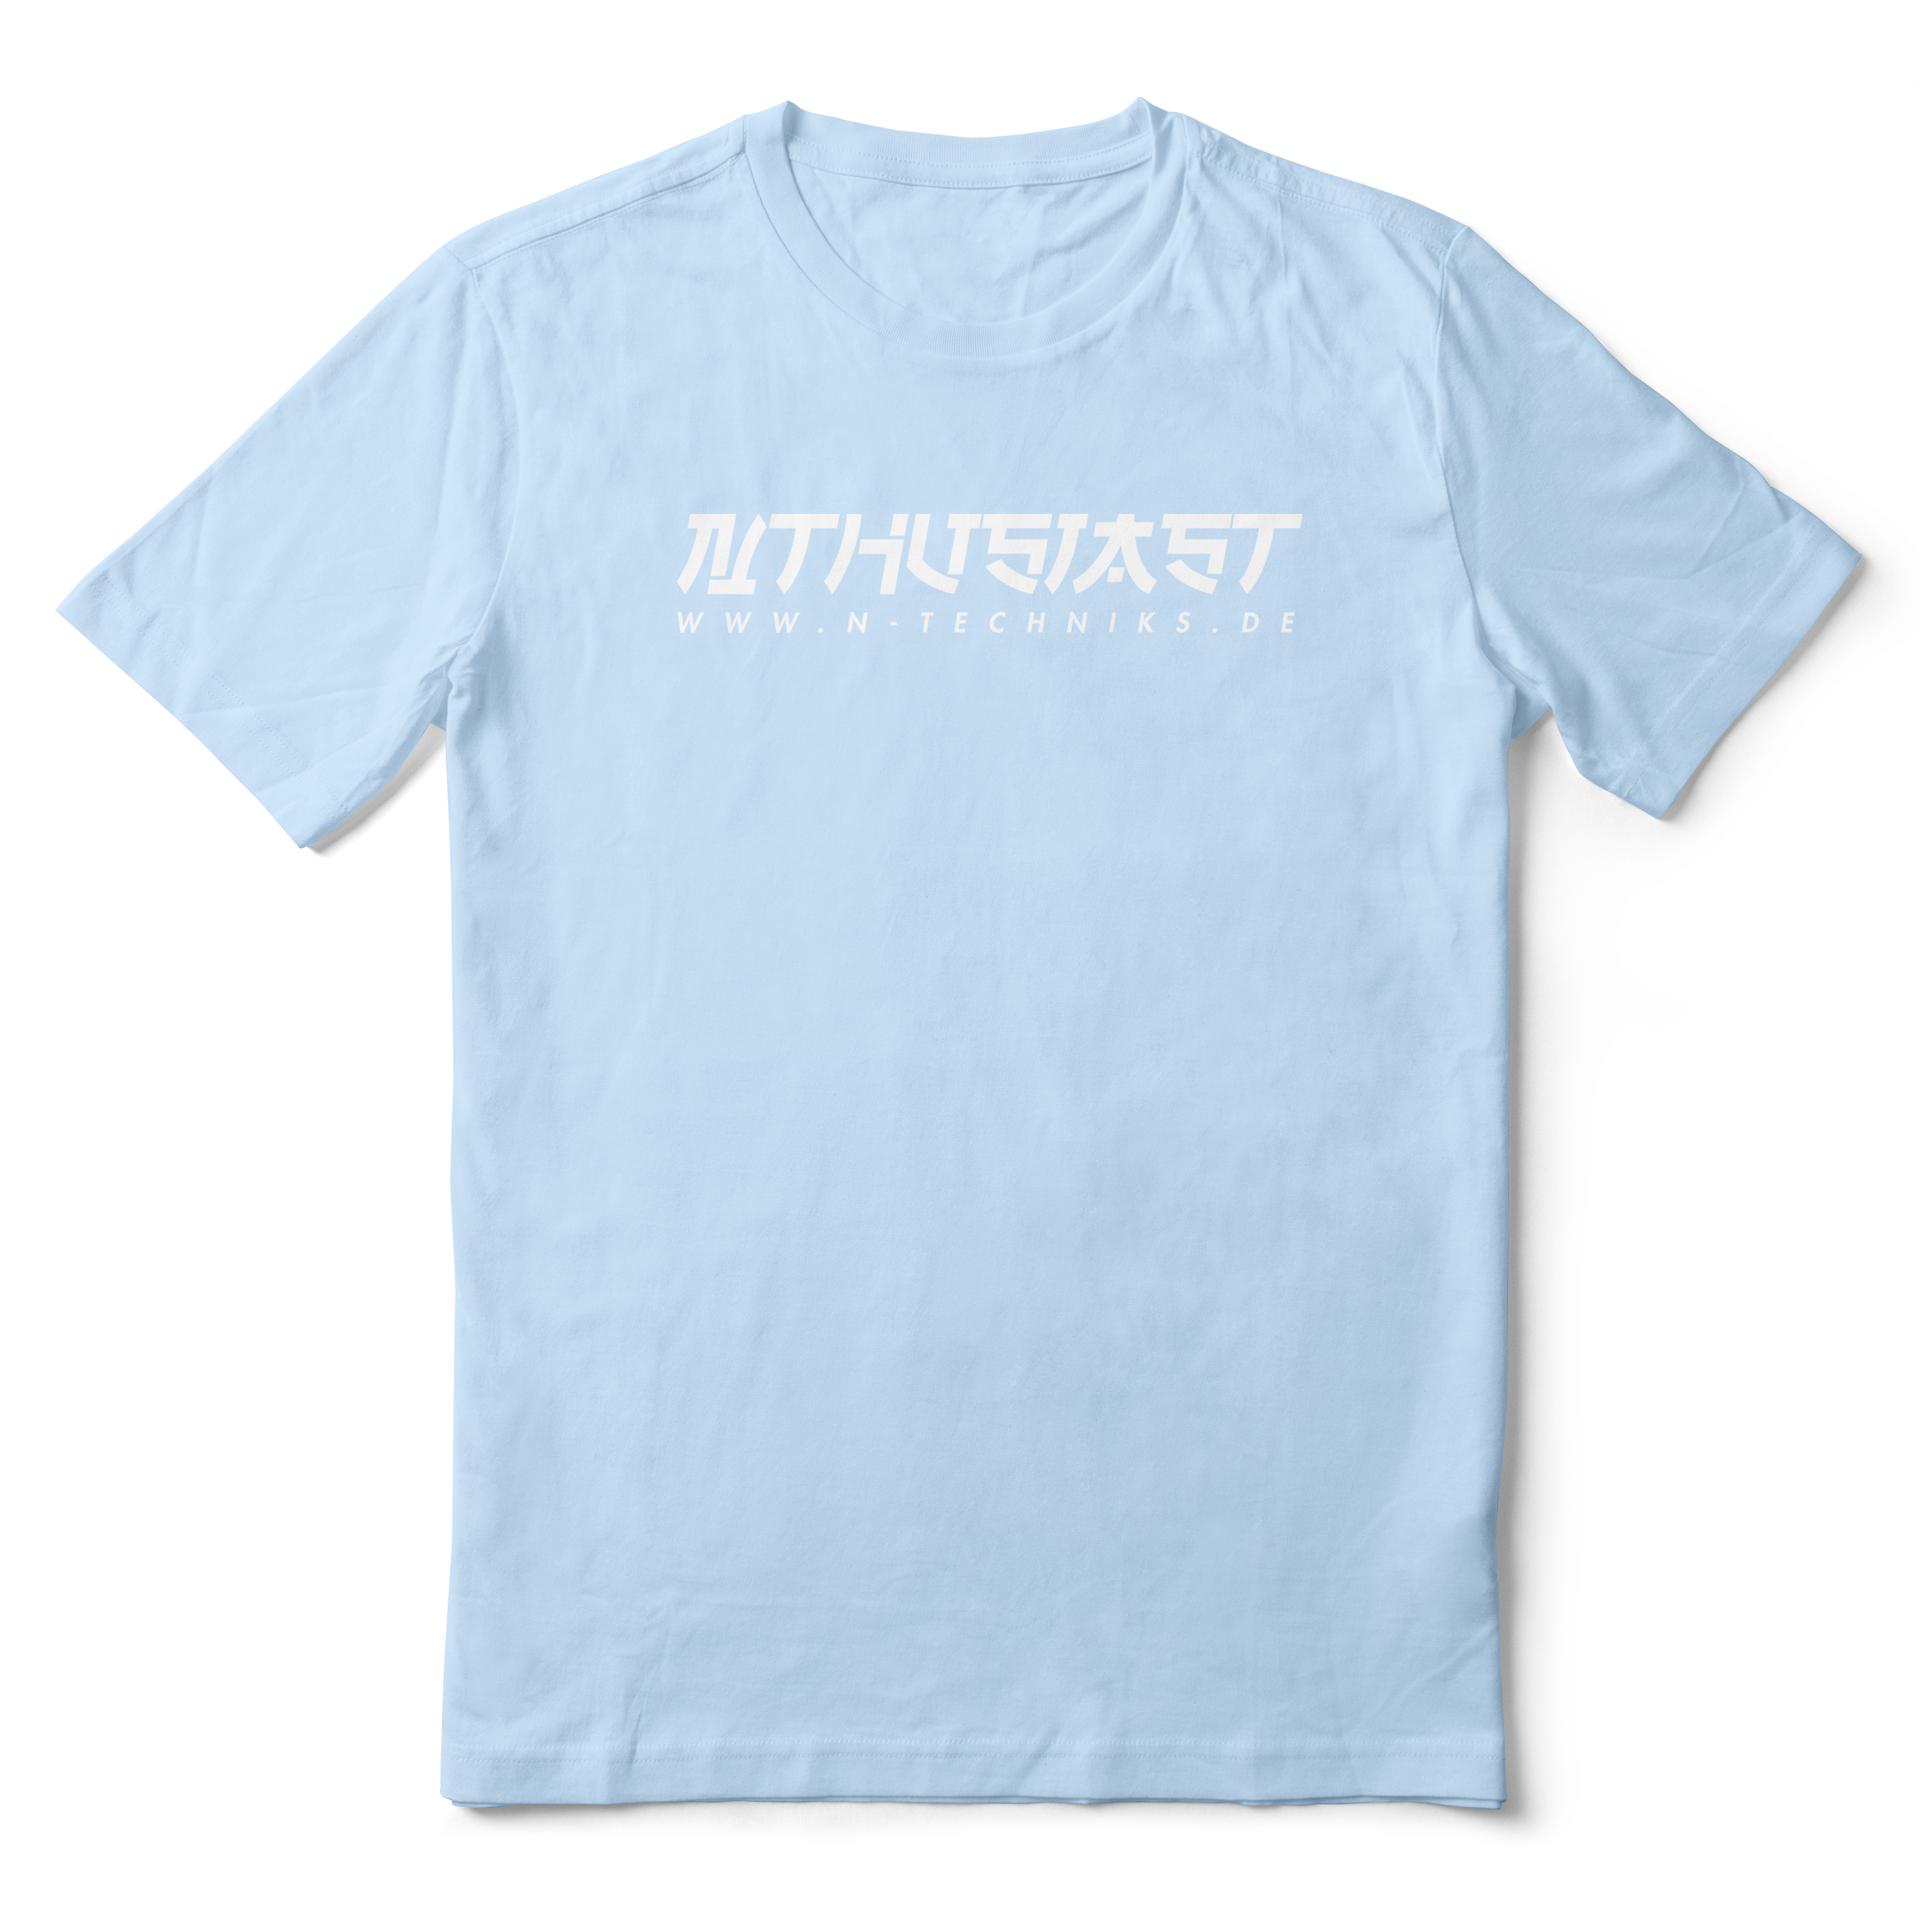 N Thusiast T-Shirt